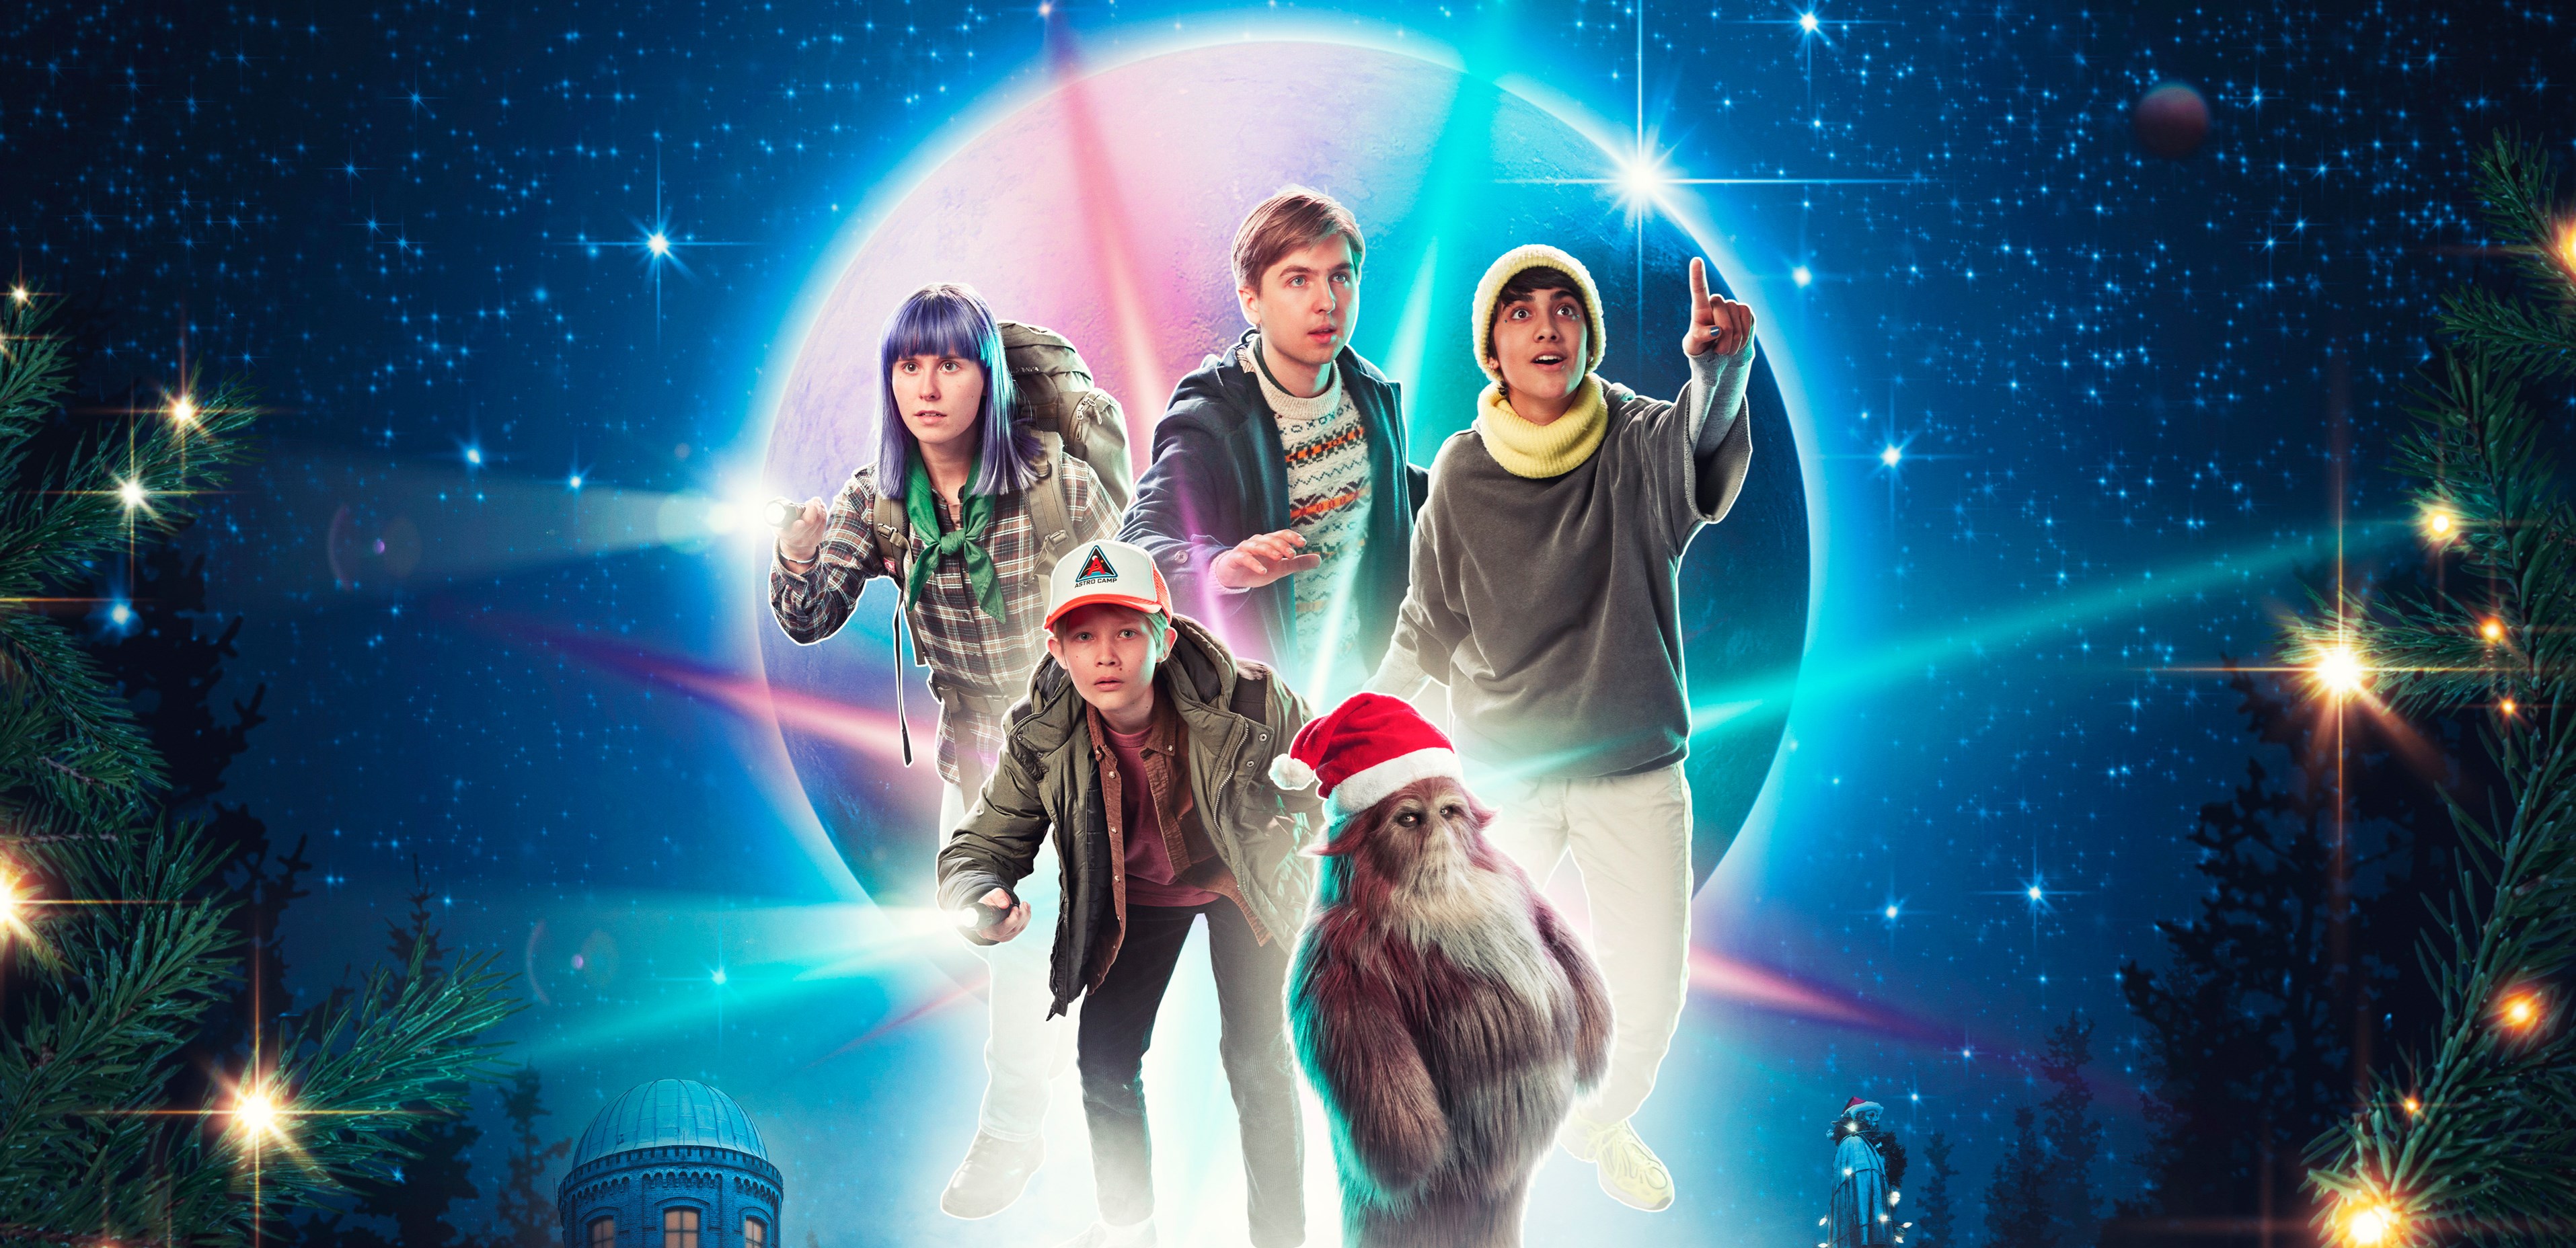 Årets TV 2-familiejulekalender 'Kometernes jul' tager os med på en eventyrlig og kosmisk rejse. TV 2 har netop i dag, torsdag, holdt pressemøde på 'Kometernes jul'. (Foto: Christian Geisnæs / TV 2)